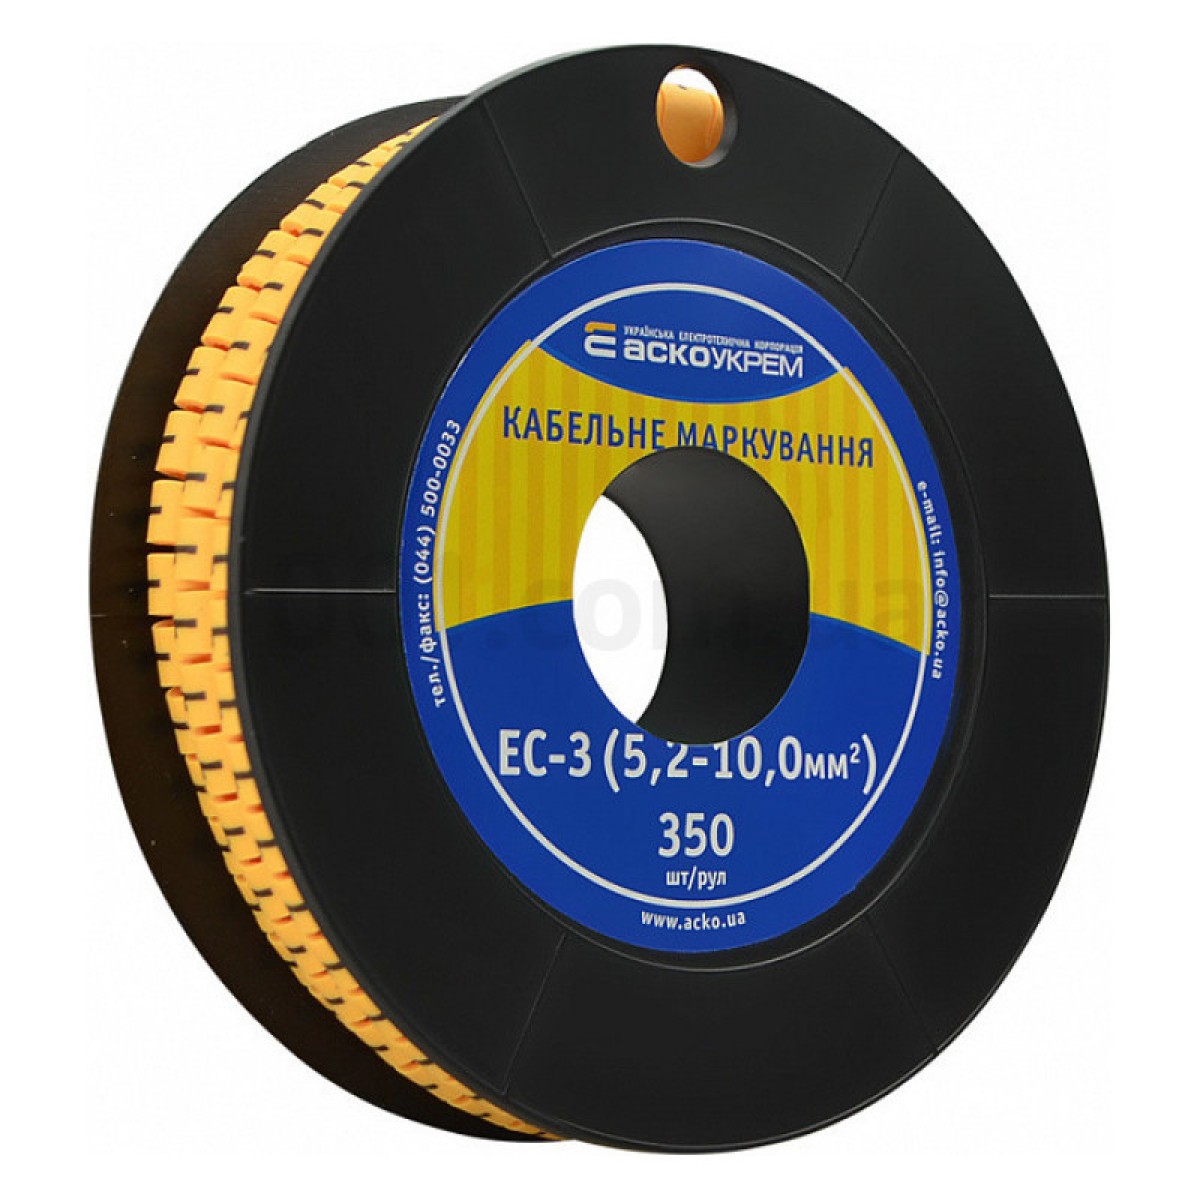 Маркування ЕС-3 для кабелю 5,2-10,0 мм² символ «1» (рулон 250 шт.), АСКО-УКРЕМ 256_256.jpg